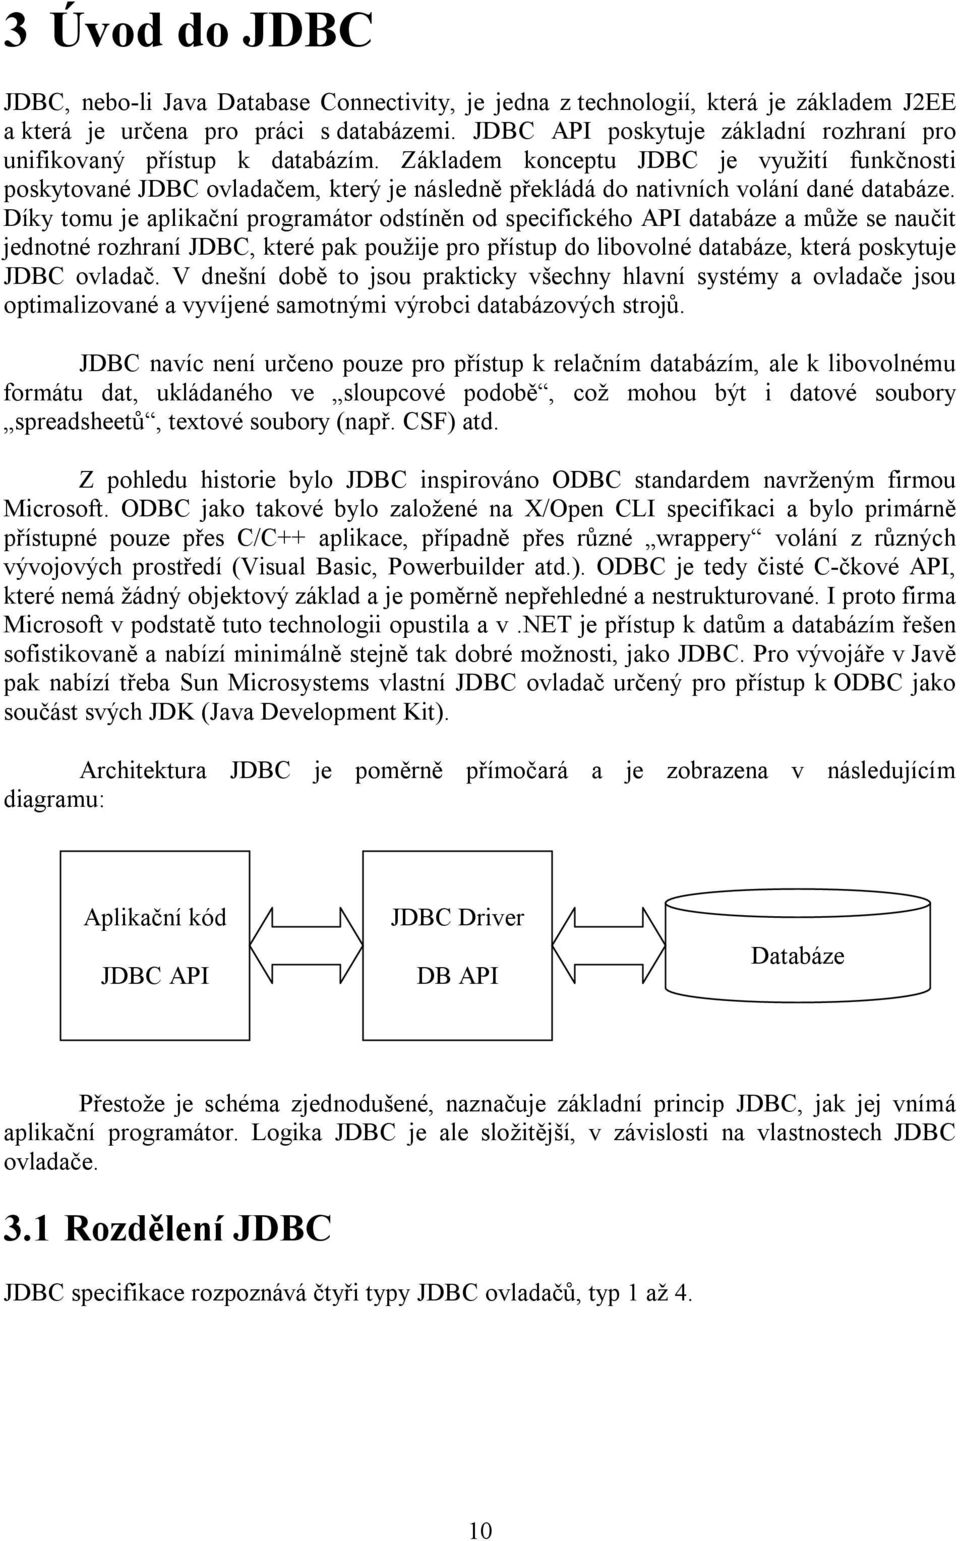 Základem konceptu JDBC je využití funkčnosti poskytované JDBC ovladačem, který je následně překládá do nativních volání dané databáze.